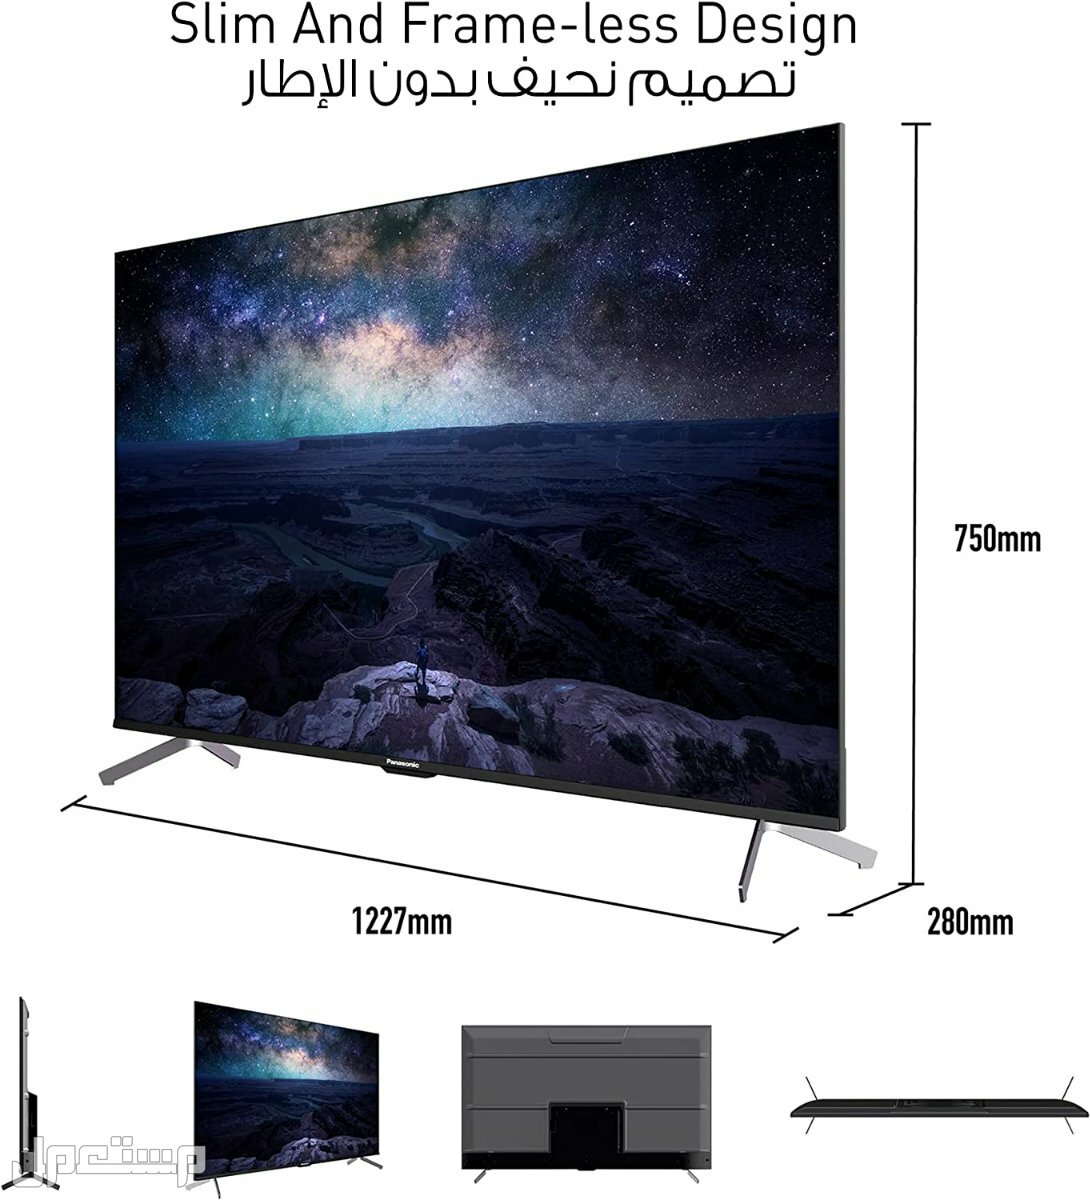 أفضل تلفزيونات سمارت.. الأنواع والمواصفات والأسعار في ليبيا تلفزيون سمارت باناسونيك بنظام اندرويد 55 بوصة